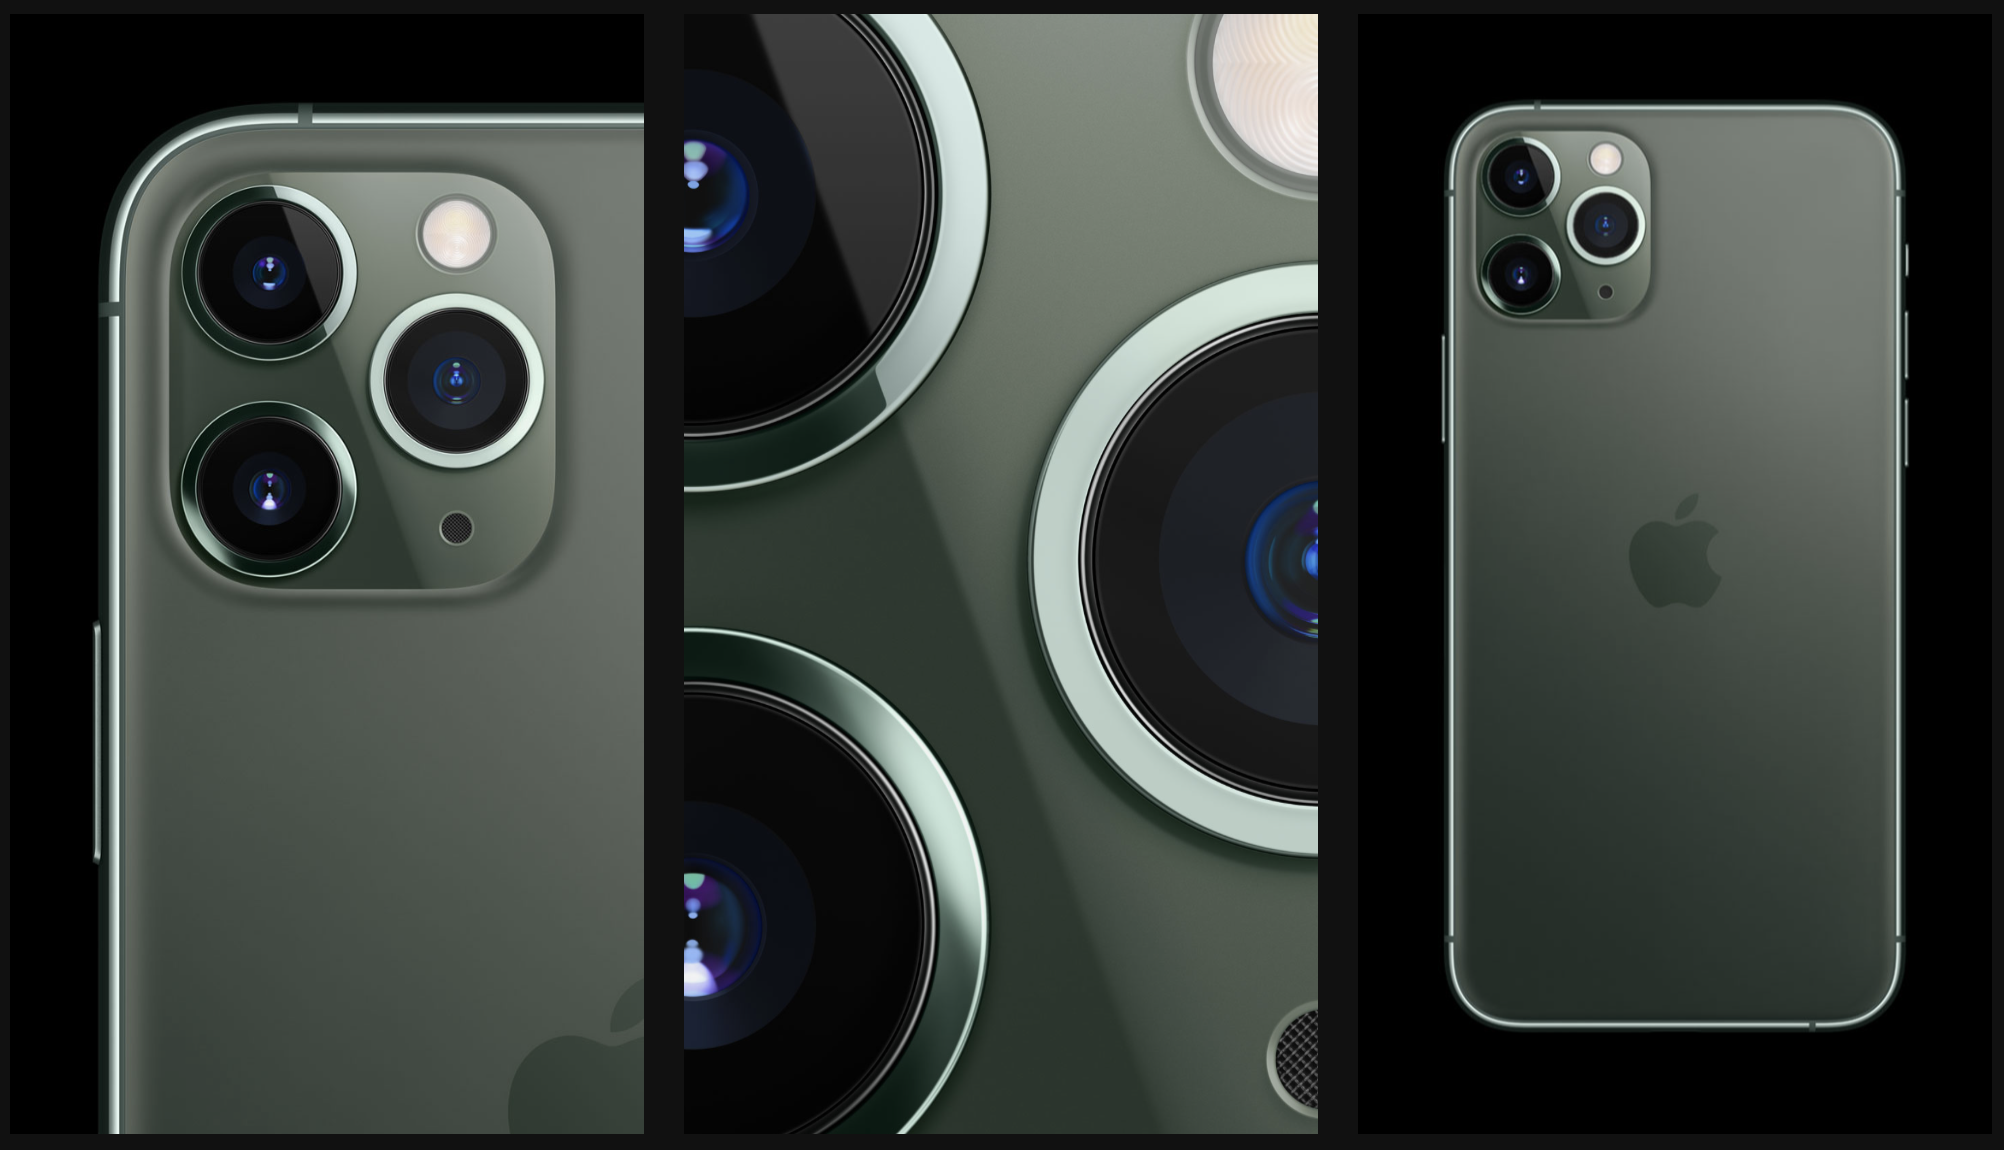 Cụm 3 camera trên chiếc iPhone 11 Pro Max "thần thánh" đến mức nào?